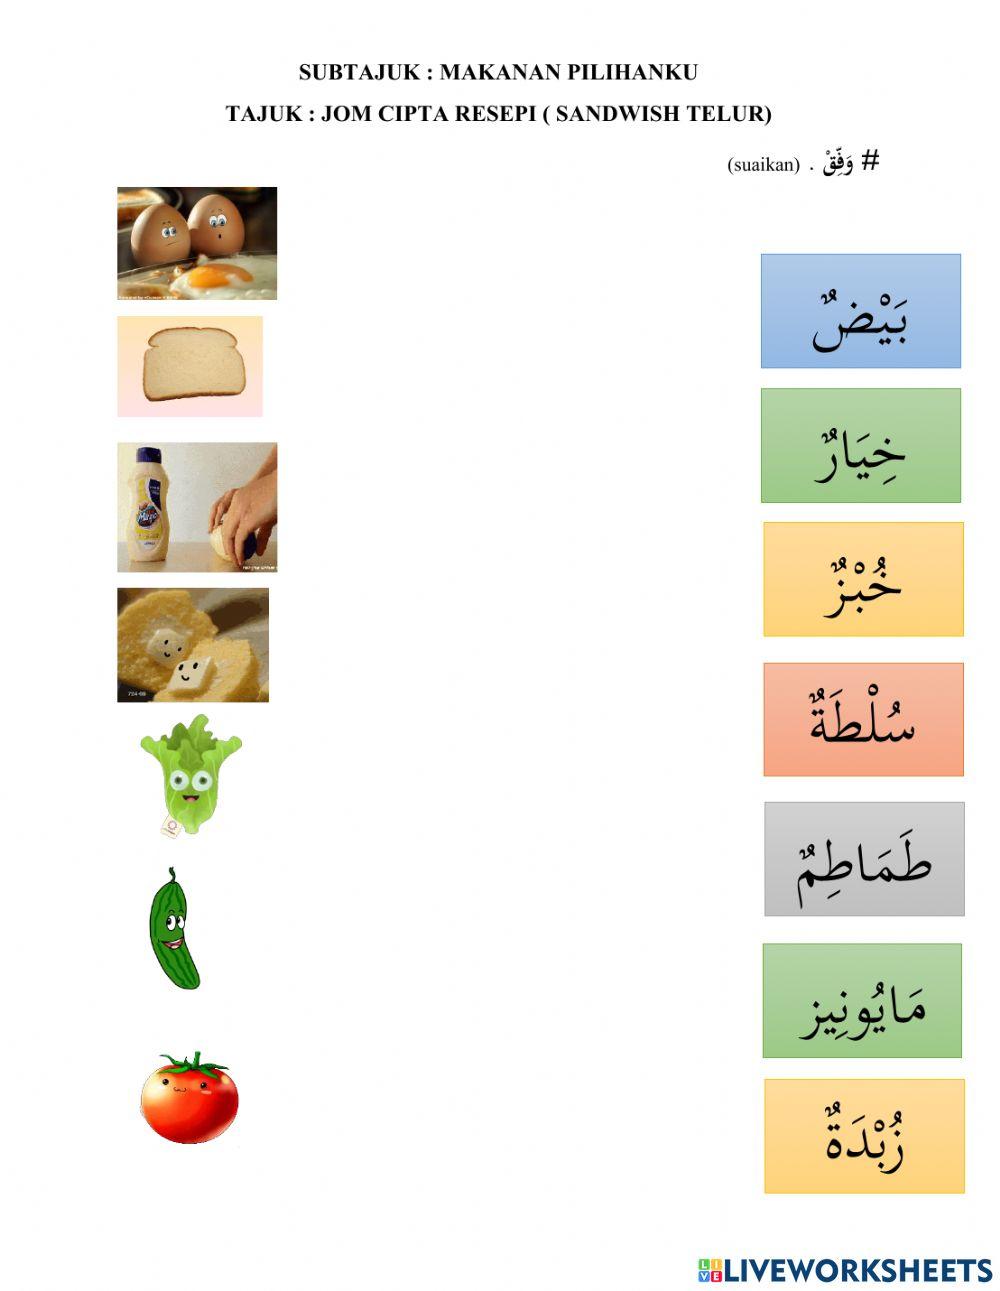 Transisi bahasa arab tahun 1 jom cipta resepi